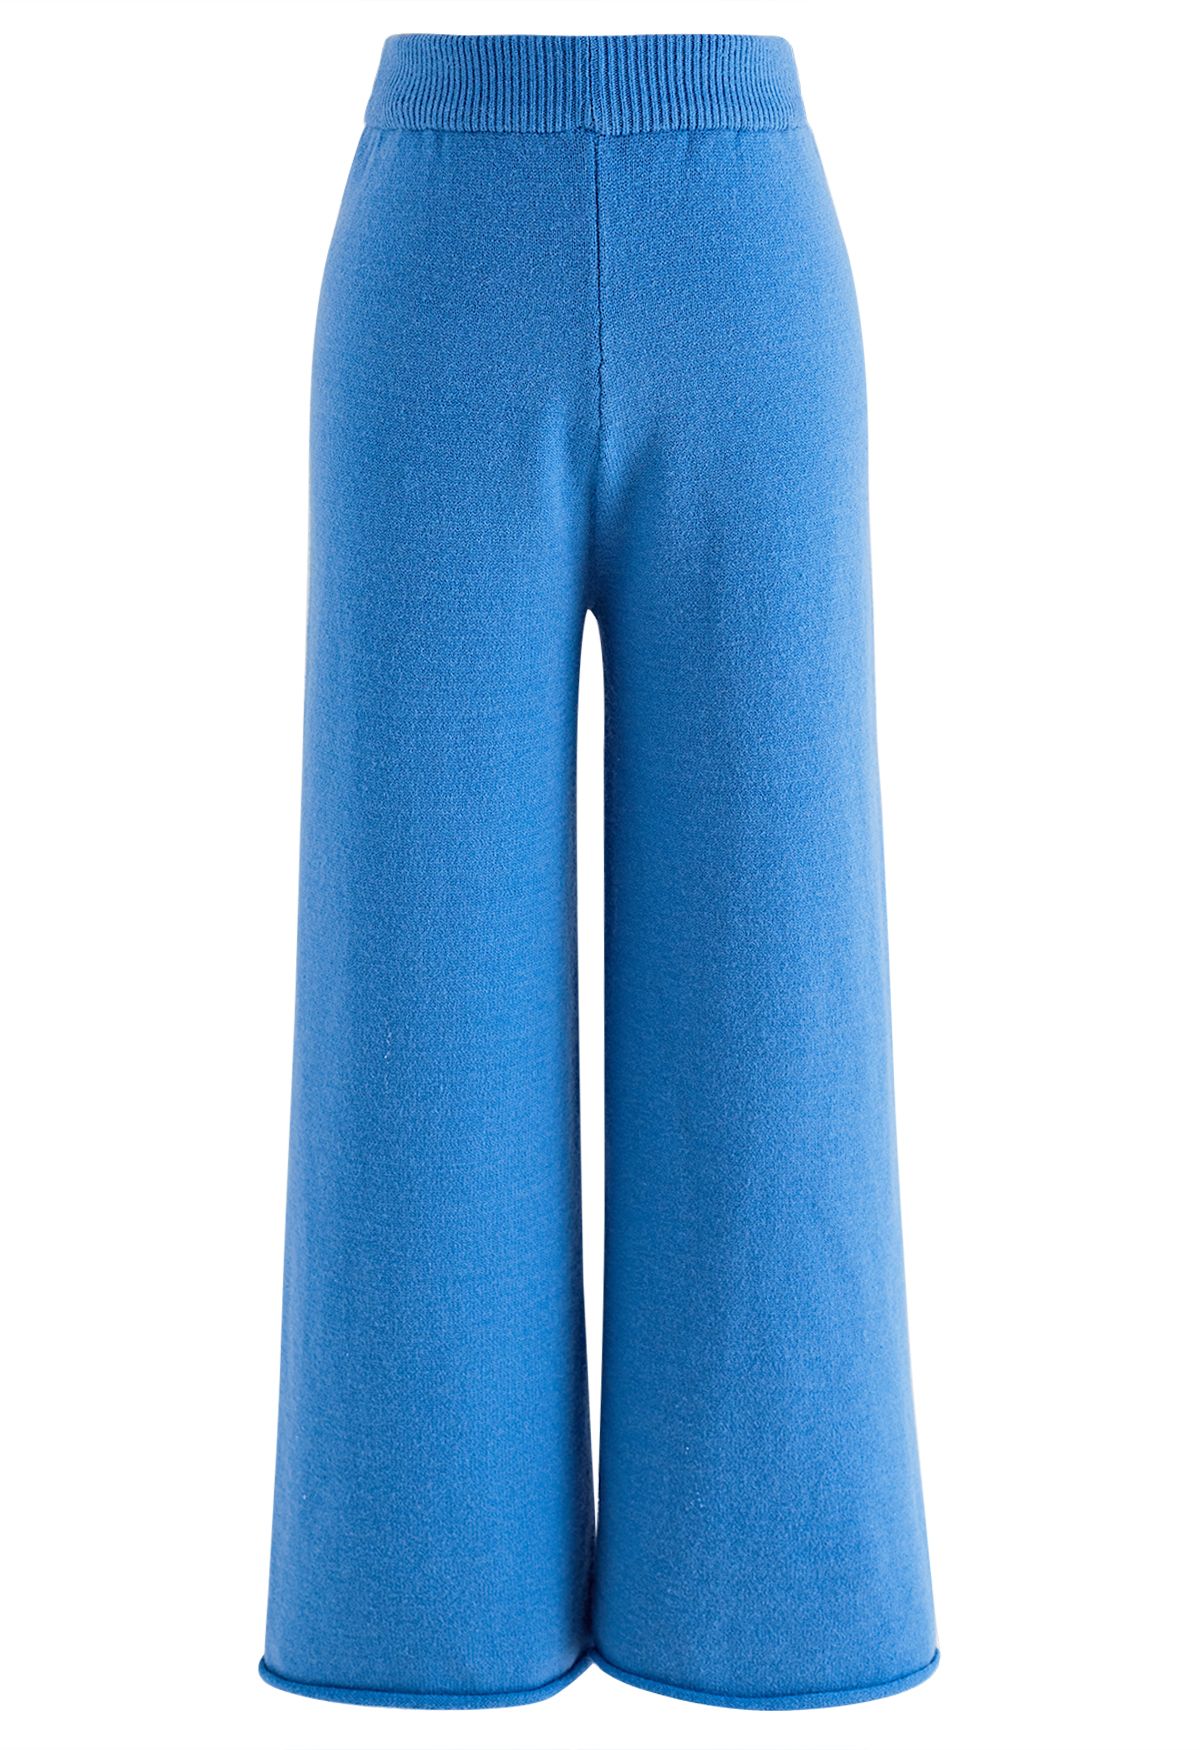 Conjunto de suéter gola alta e calça de malha em azul